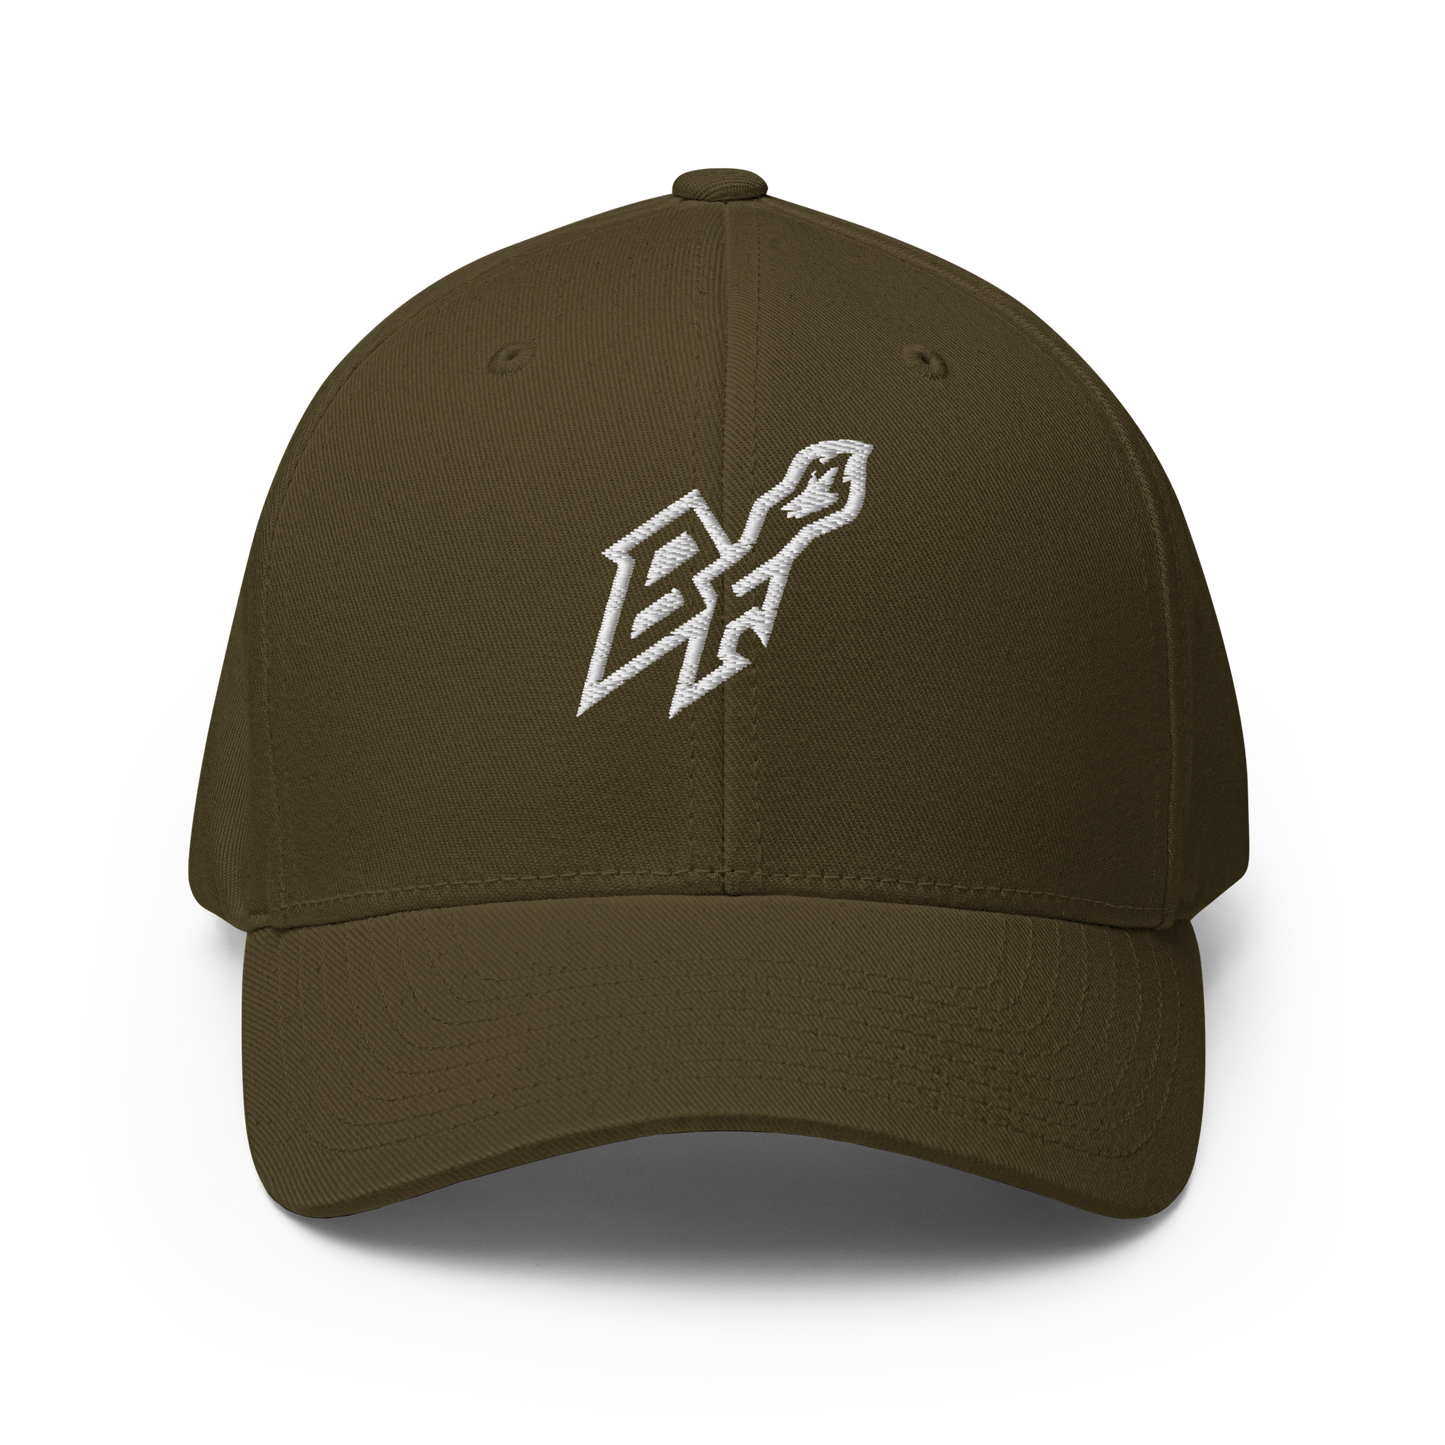 BlackFox Flex fit Hat